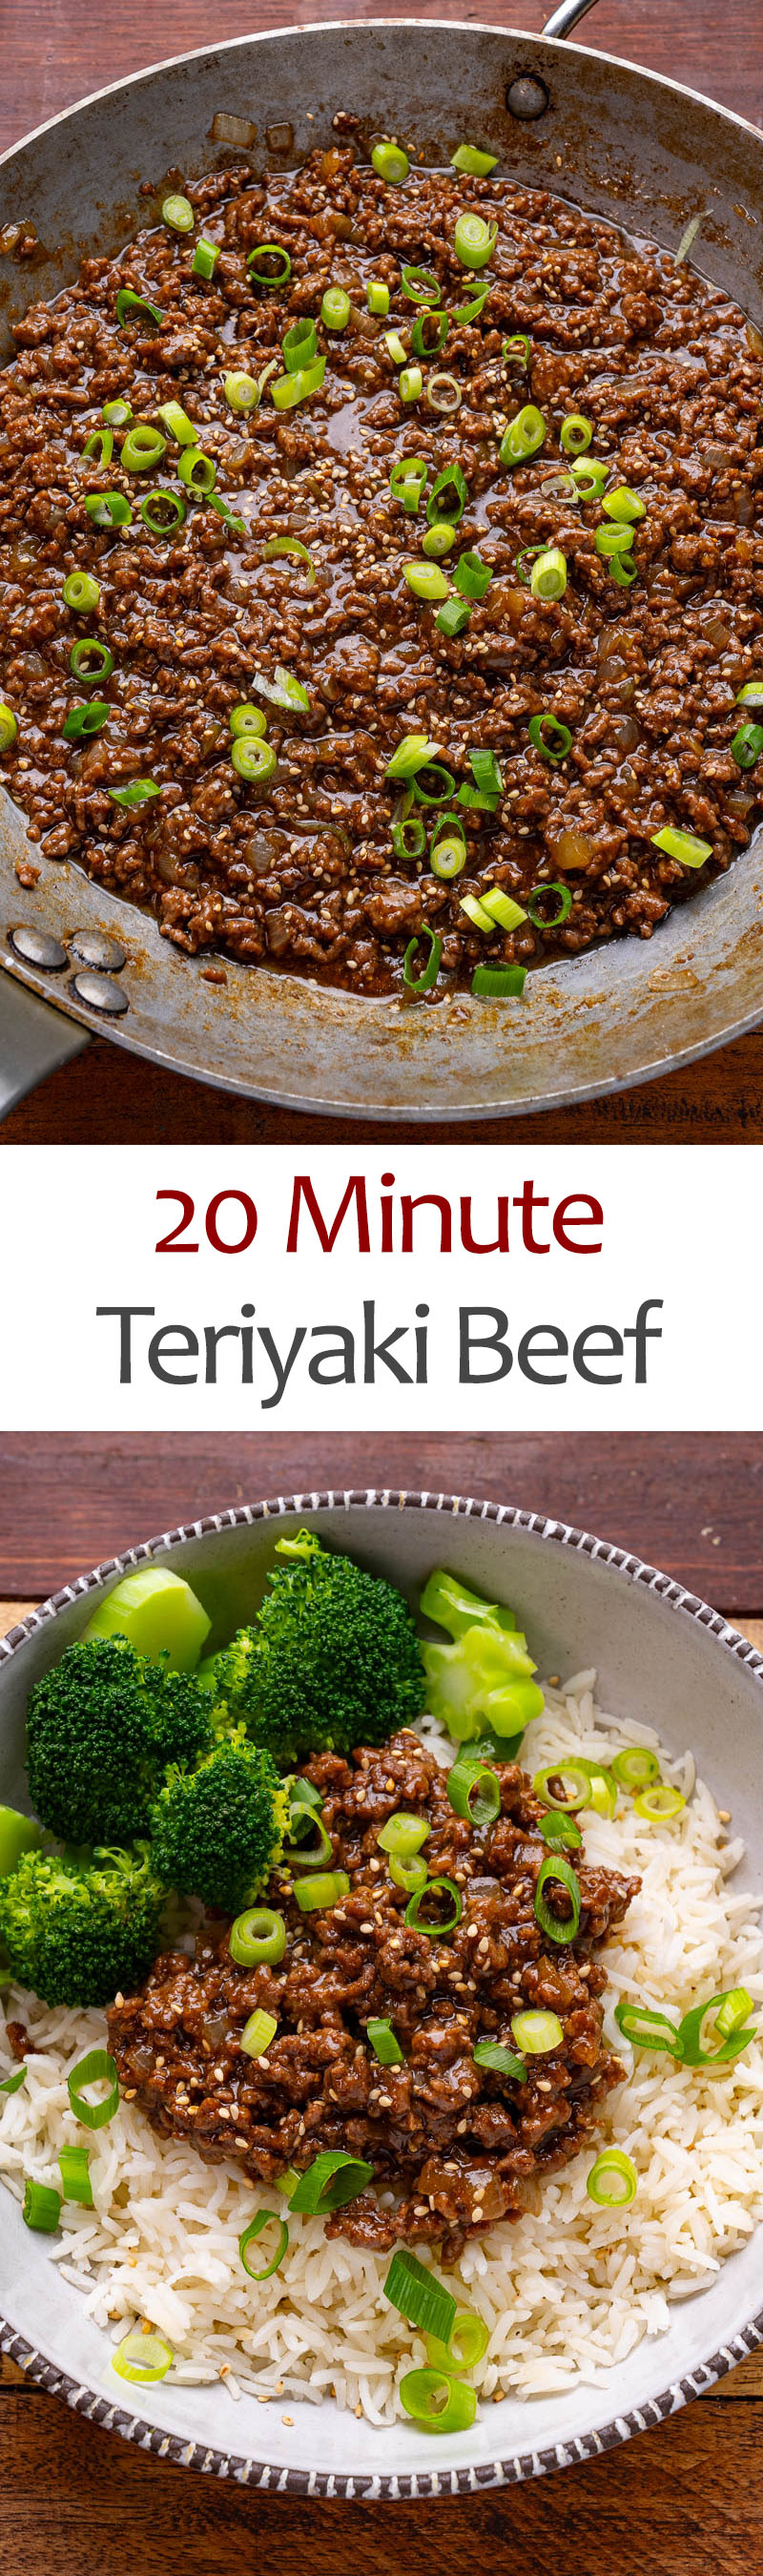 20 Minute Teriyaki Beef